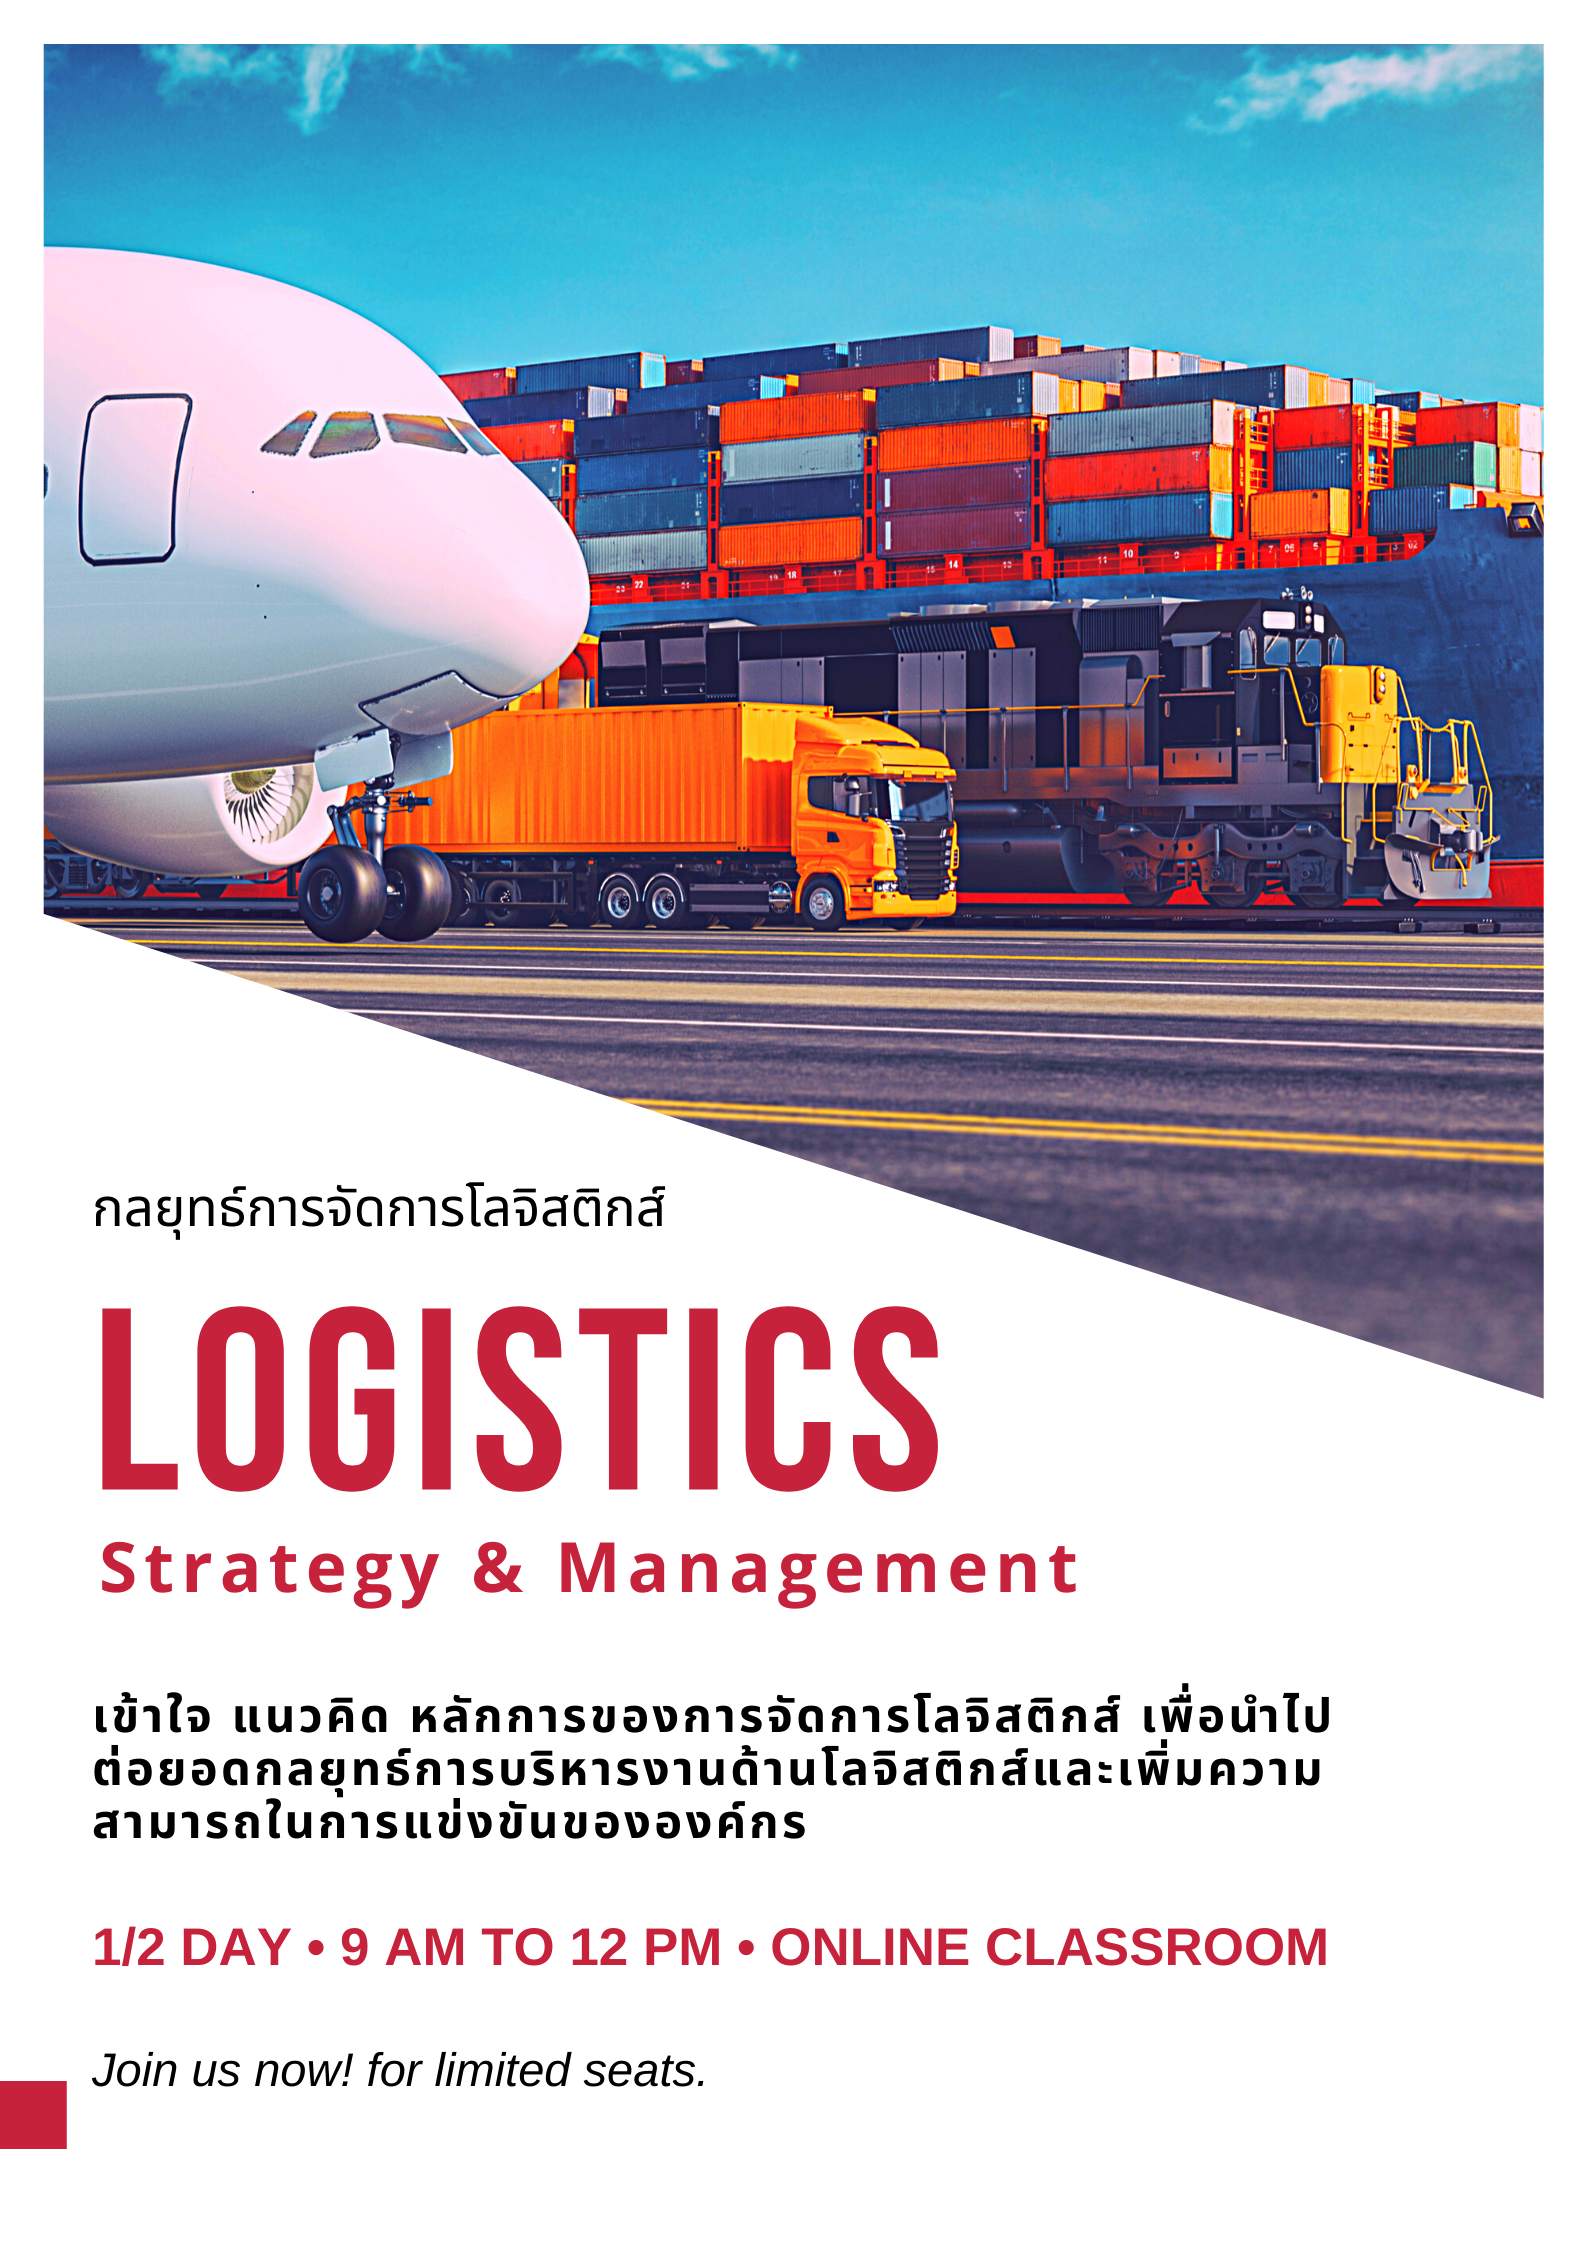 หลักสูตรอบรมออนไลน์ : กลยุทธ์การจัดการโลจิสติกส์ (Logistics: Strategy & Management) - หลักสูตร 3 ชั่วโมง